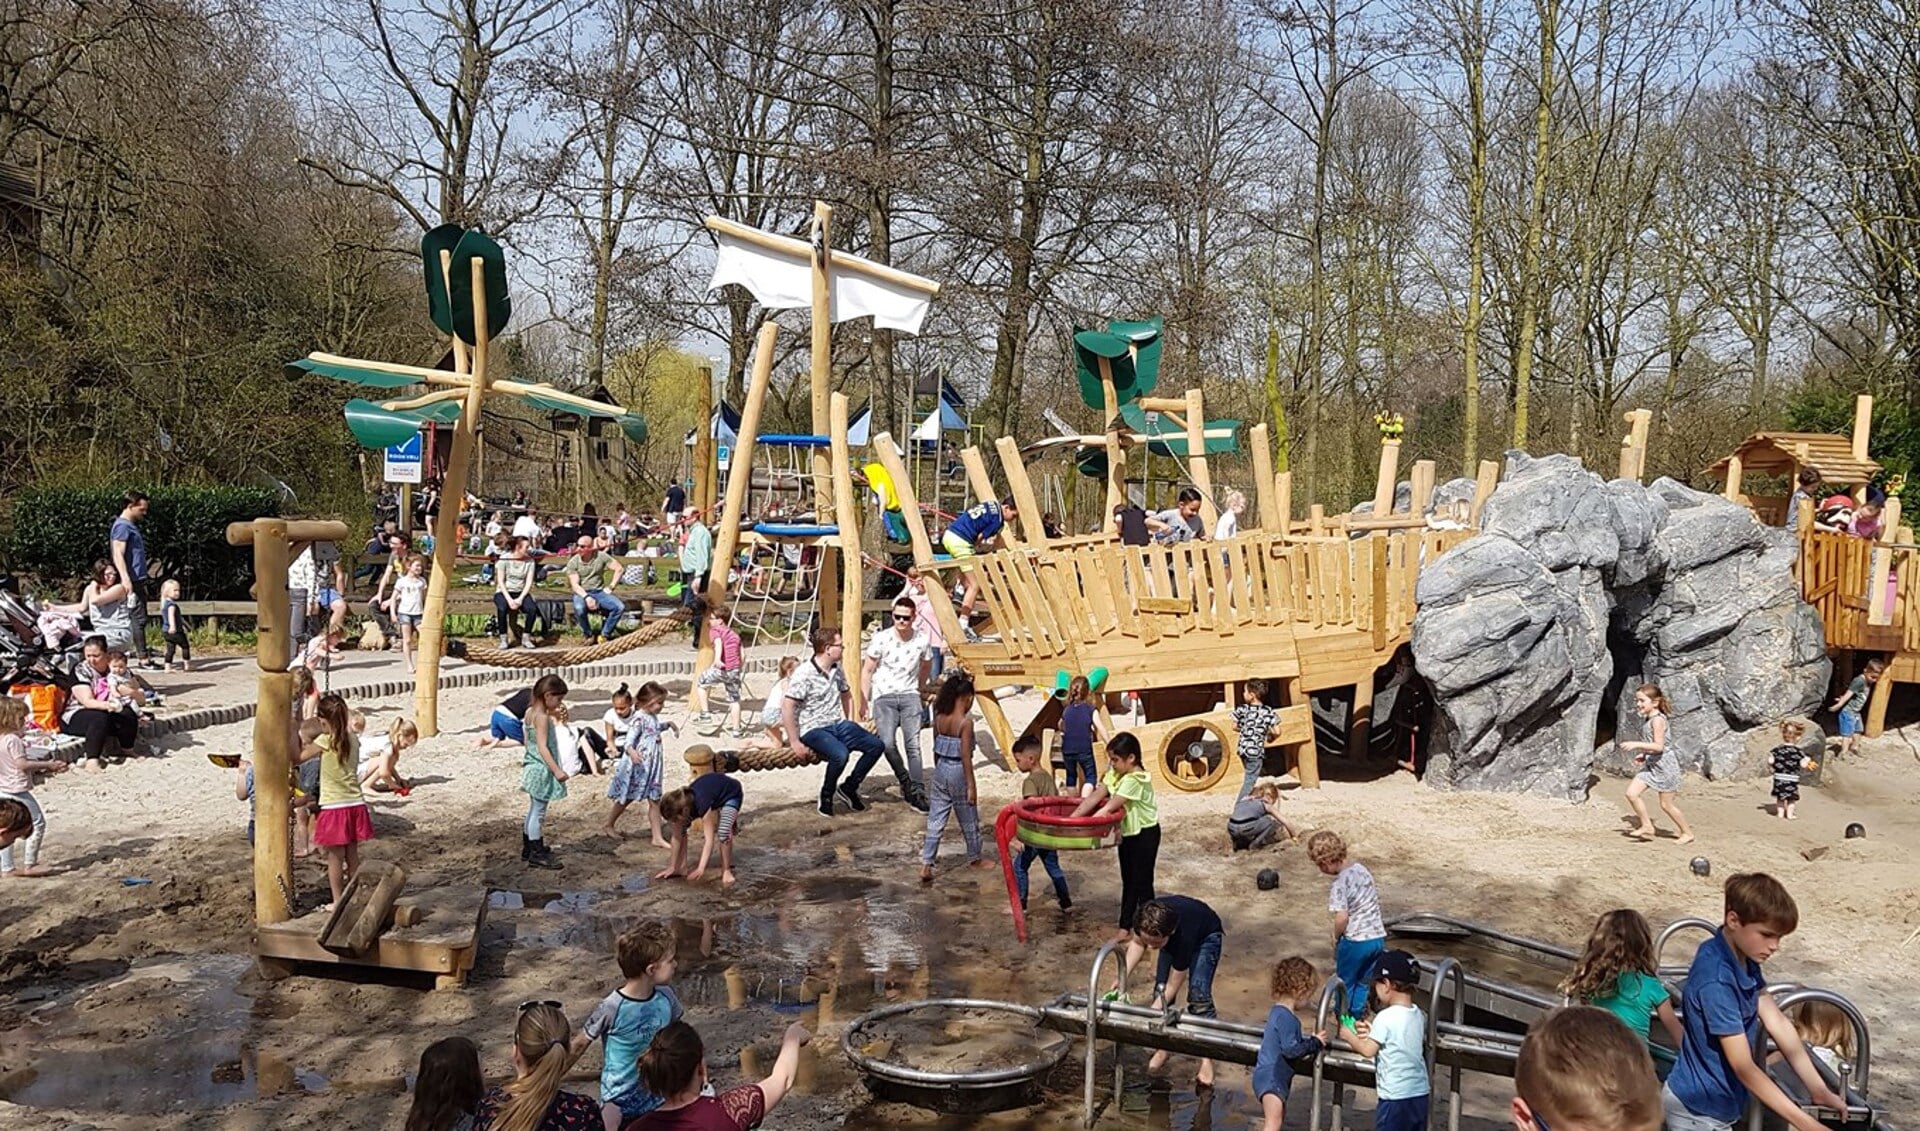 Uitgangspunt van Speeltuin 't Kwekkeltje in Rosmalen is dat kinderen met en zonder handicap recht hebben om gratis veilig te spelen.